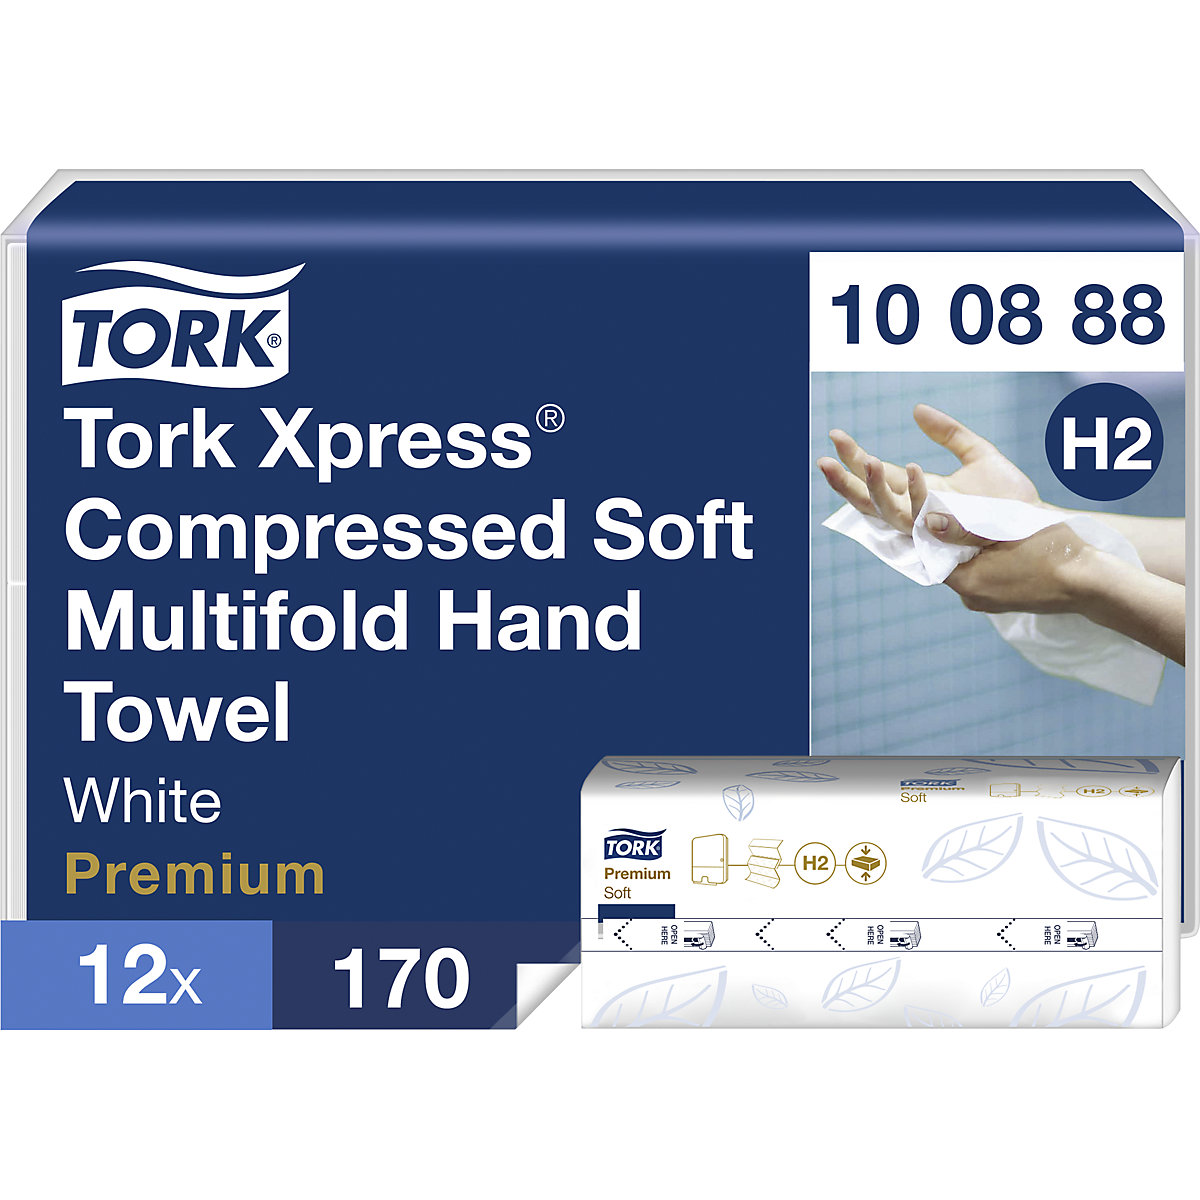 Toallas de papel Multifold comprimidas Xpress - TORK